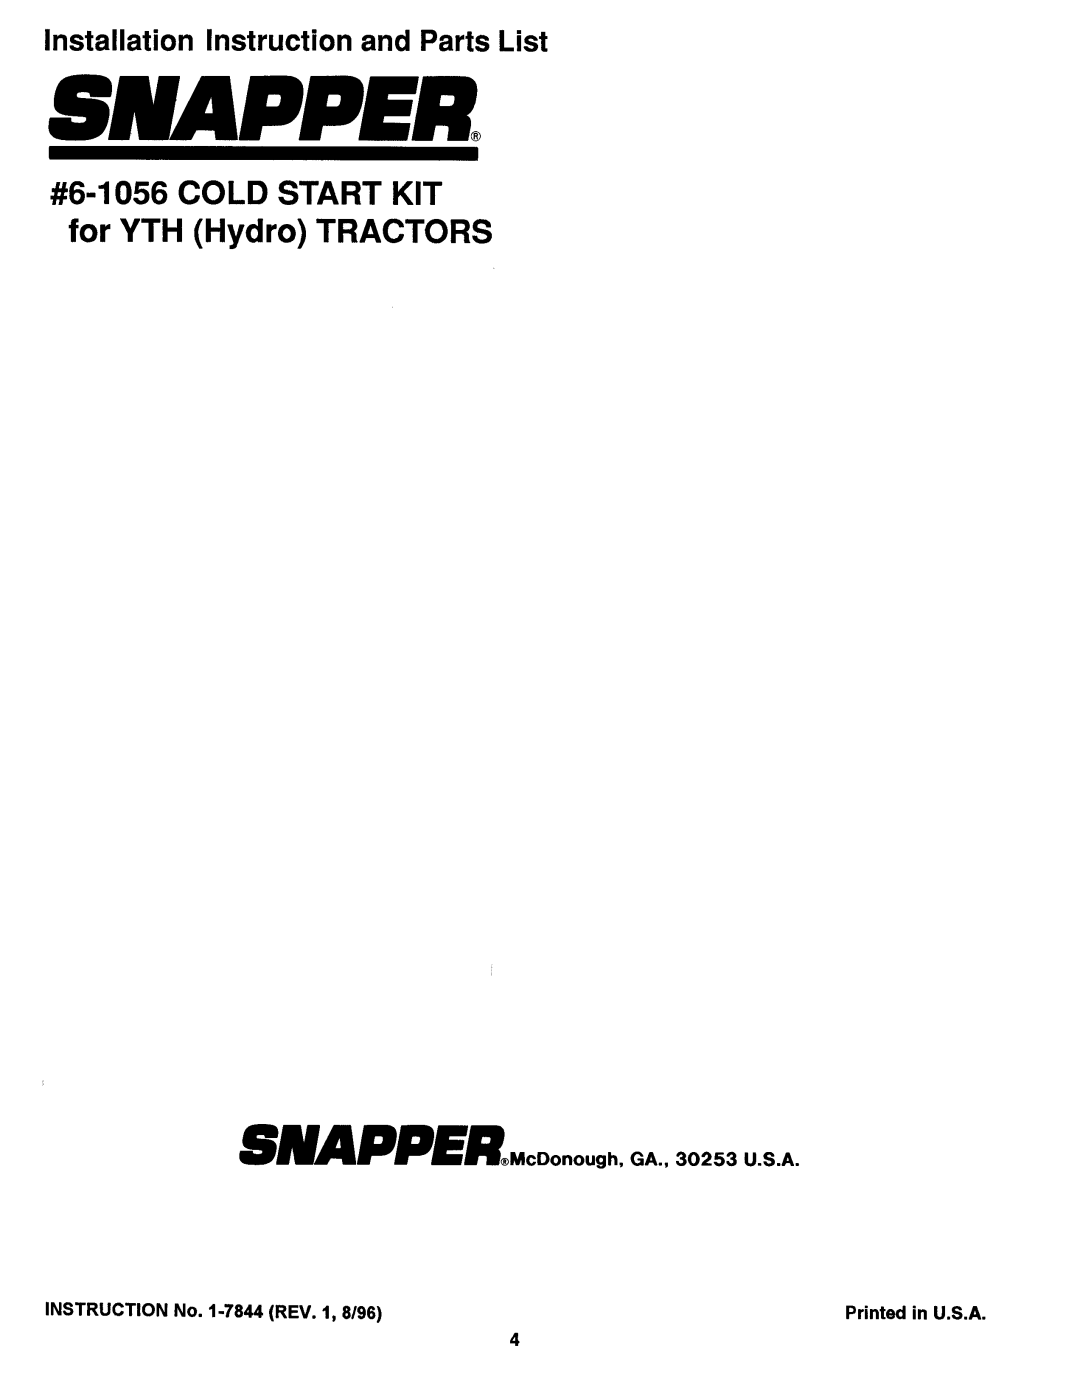 Snapper 6-1056 manual 